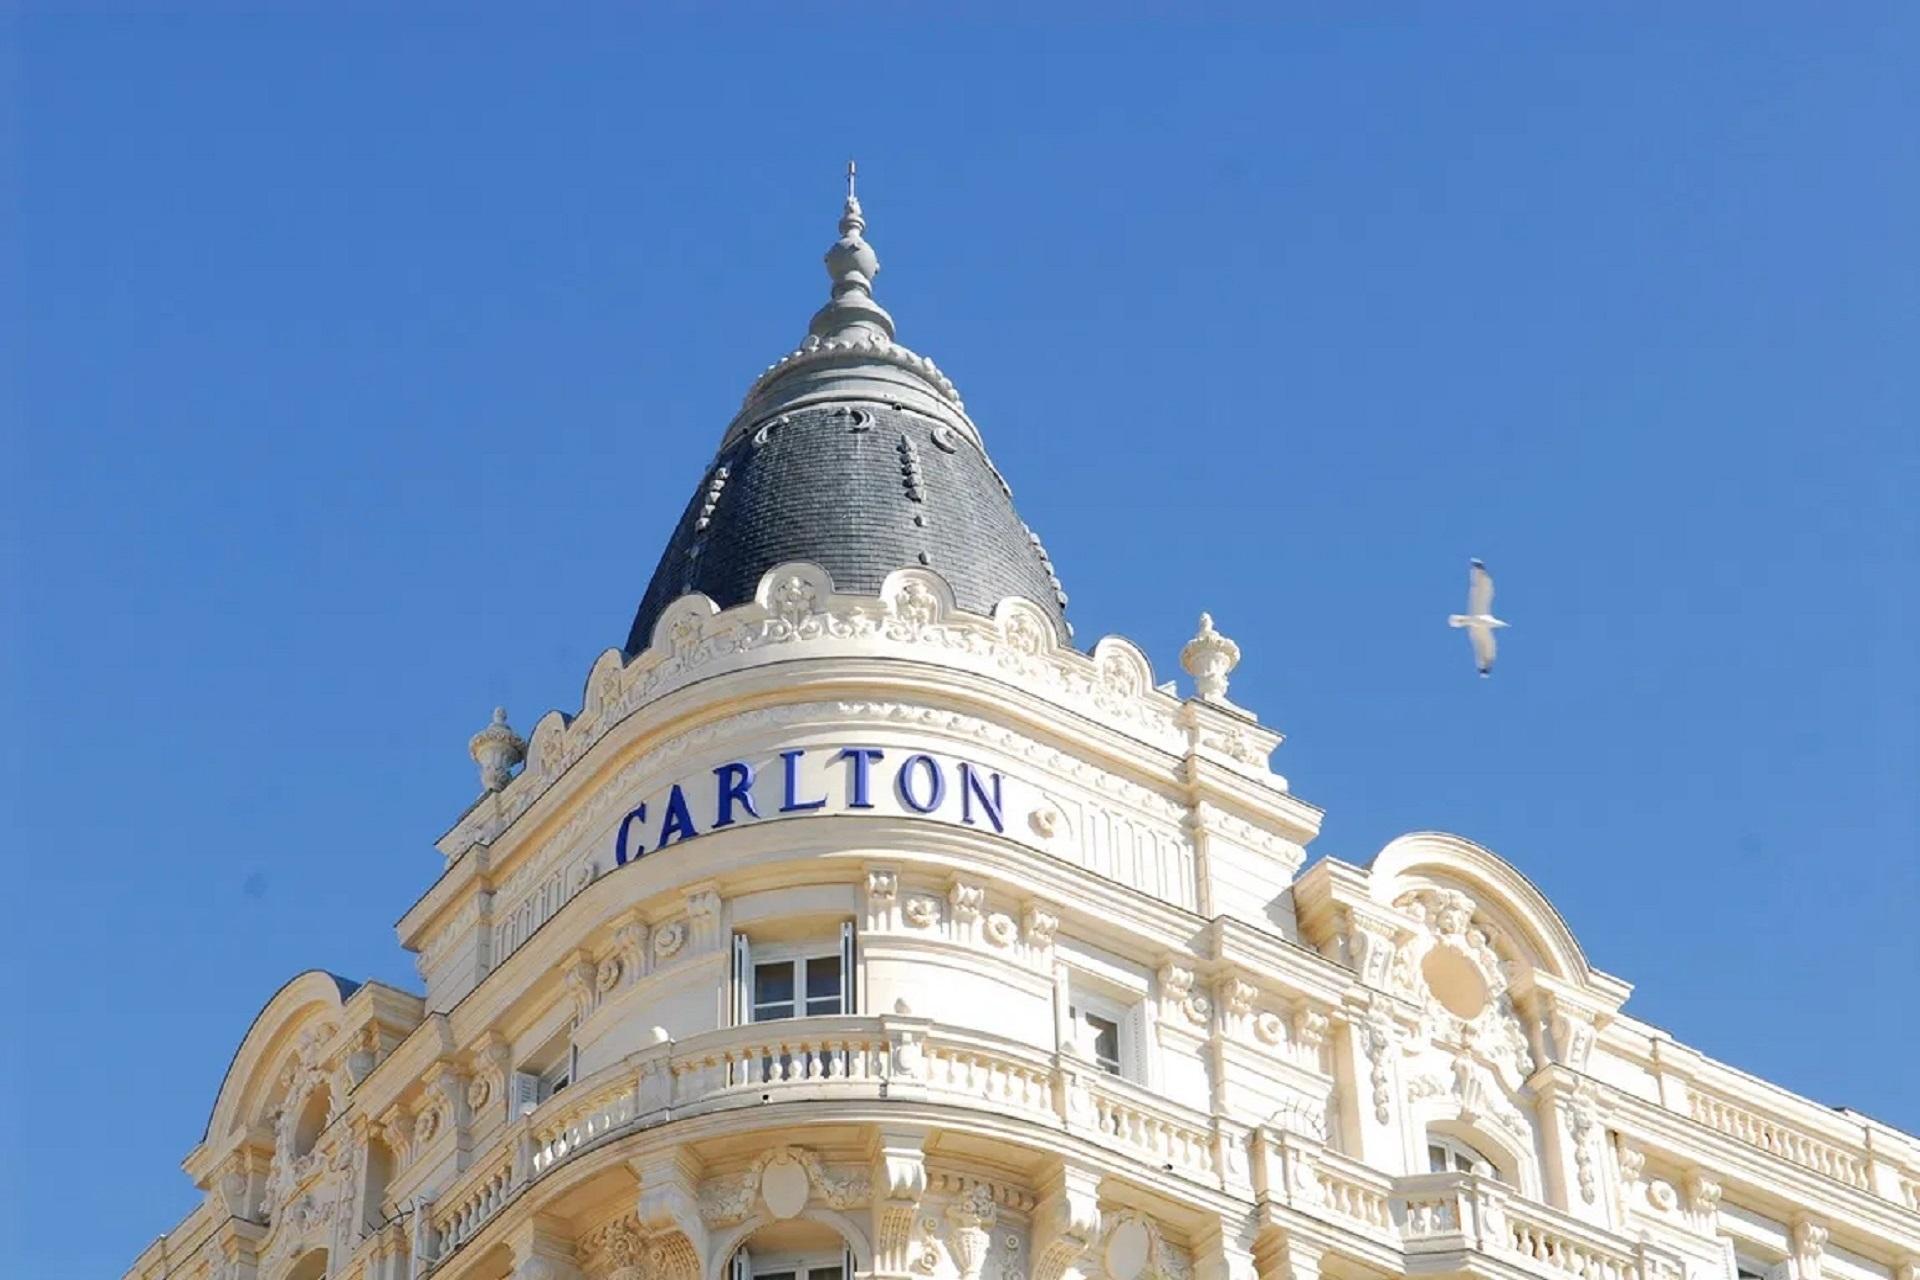 Carlton-Cannes-French-Riviera-cote-dazur-Croisette